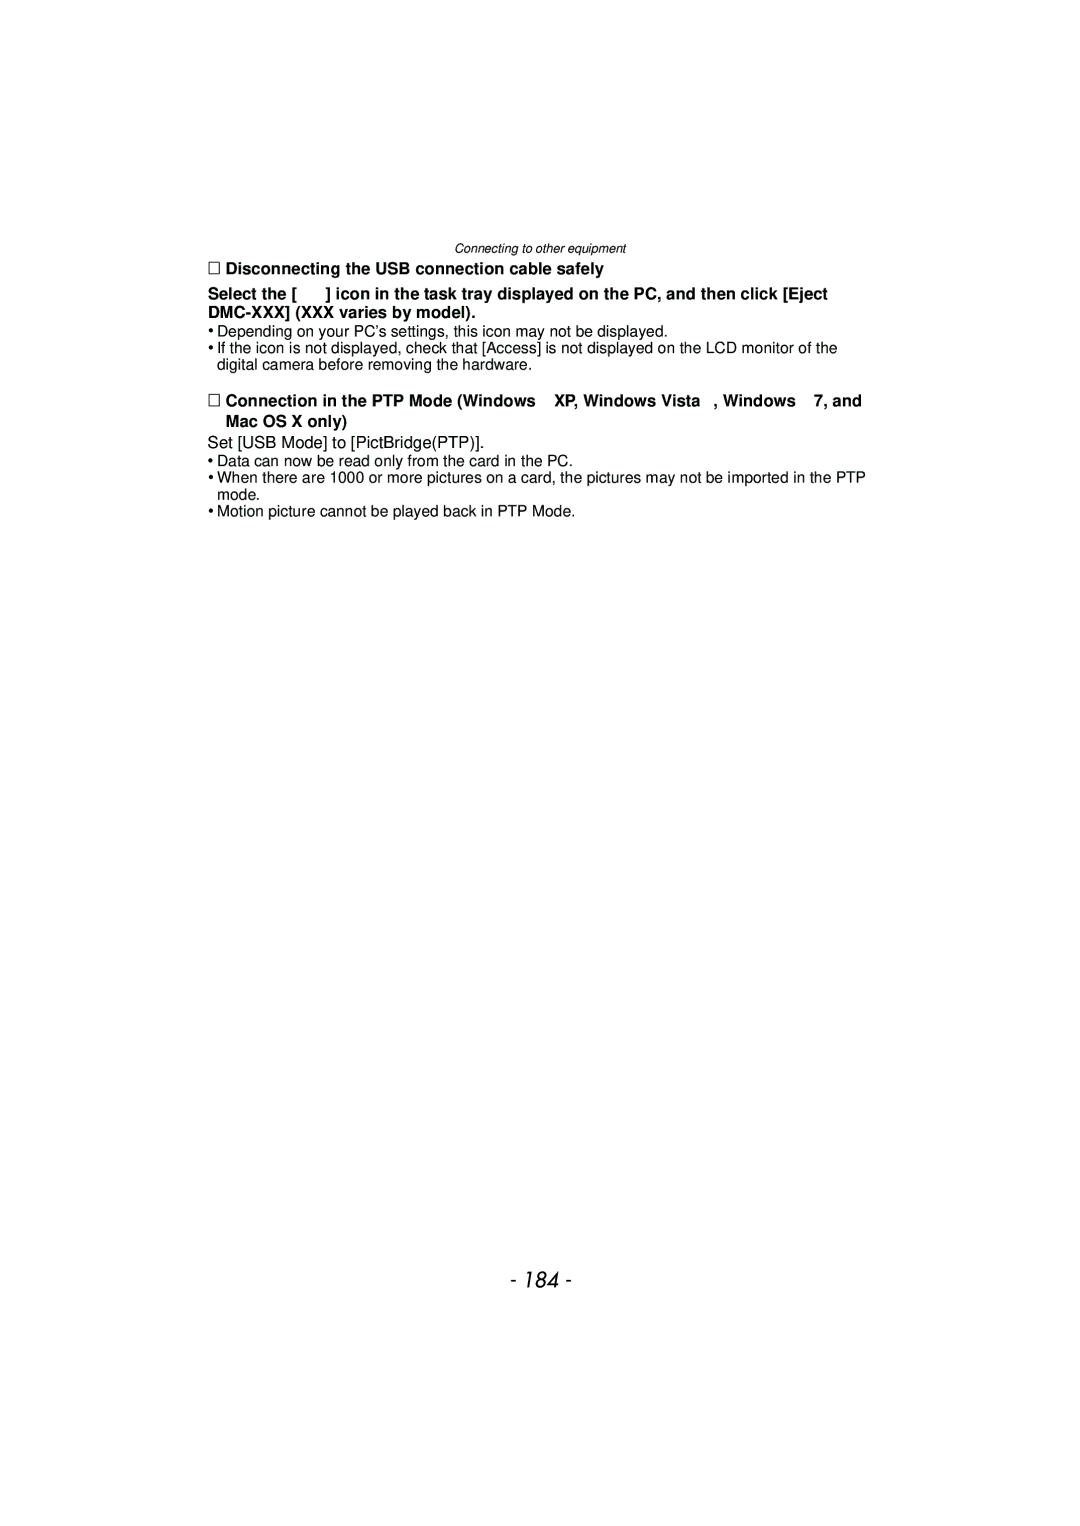 Panasonic DMC-GF5 owner manual 184, Set USB Mode to PictBridgePTP 